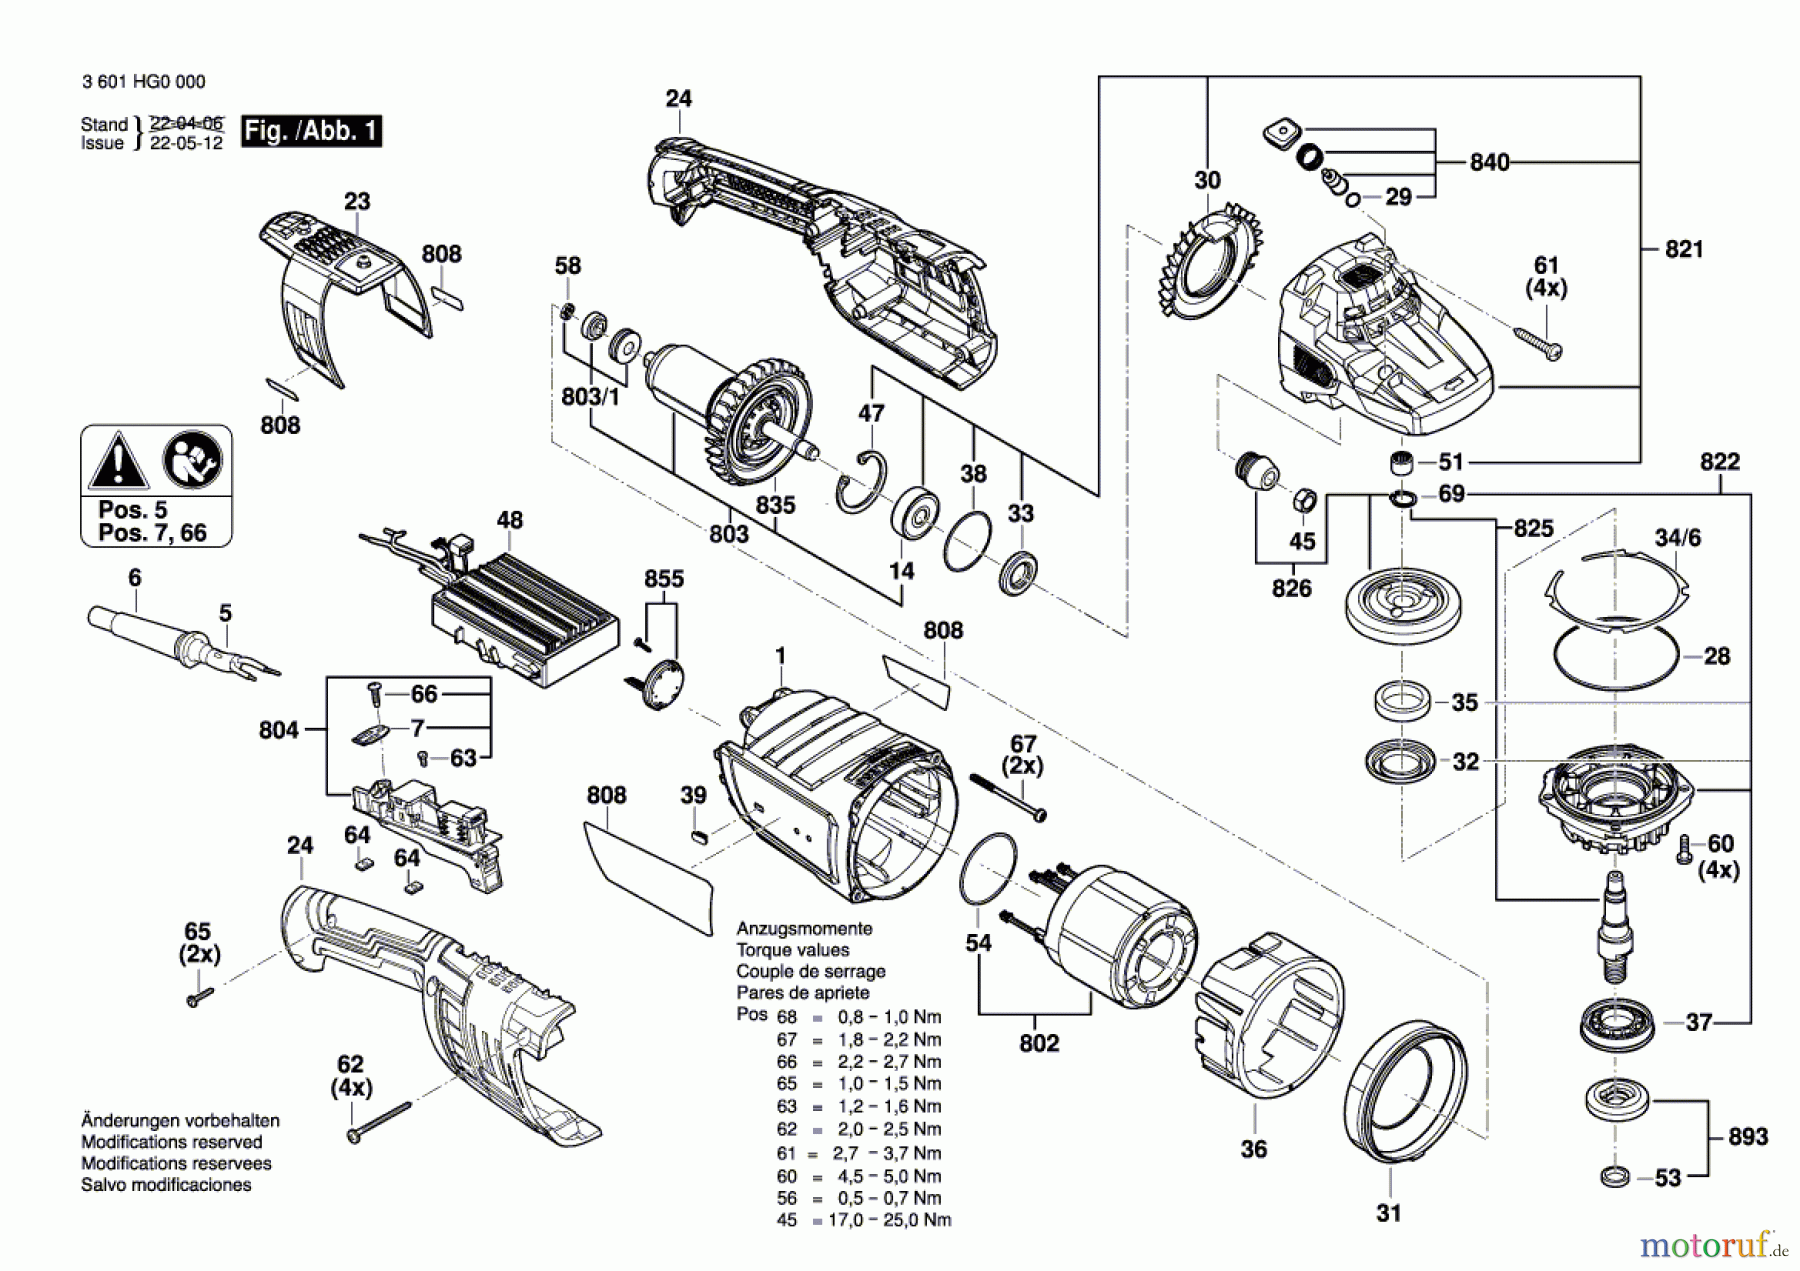  Bosch Werkzeug Winkelschleifer GWS 30-230 B Seite 1